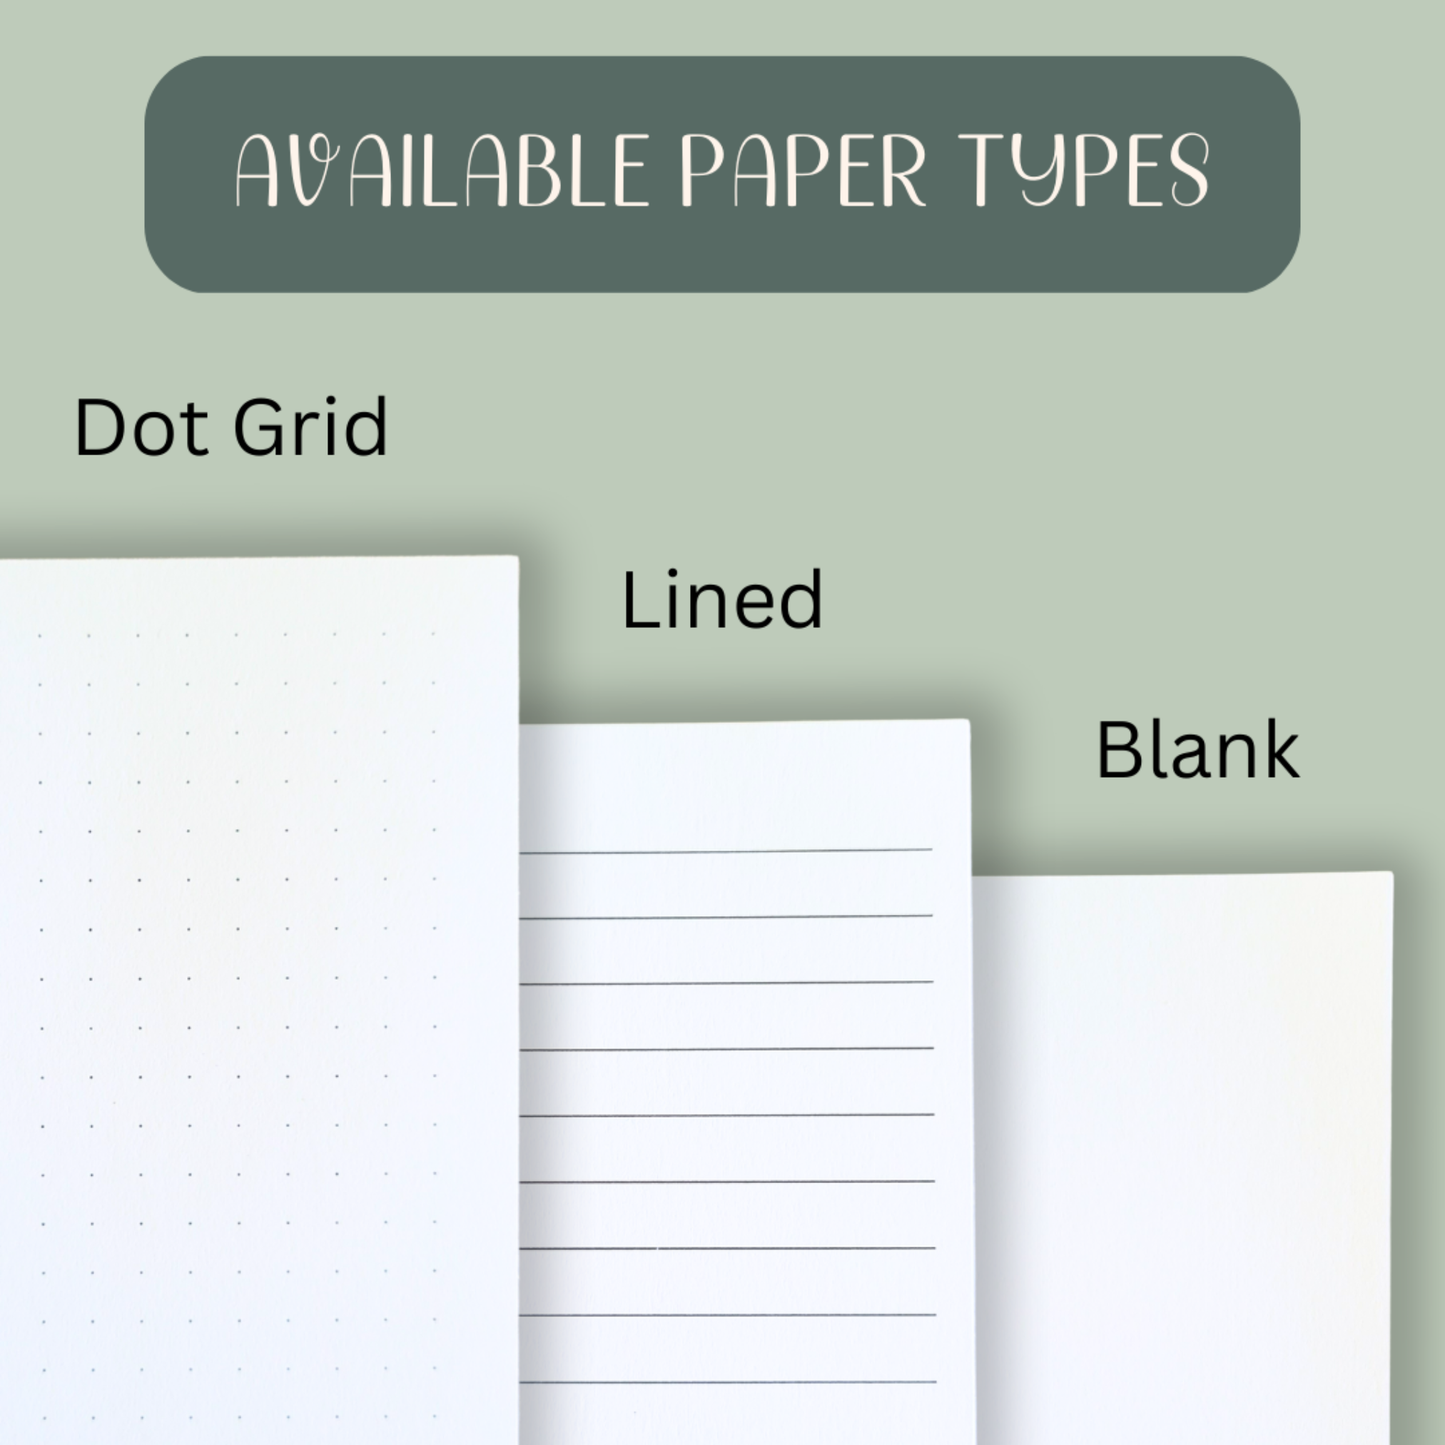 Zen Spirals Wood Journal - Stationery, Journals, Notebook: Blank Paper